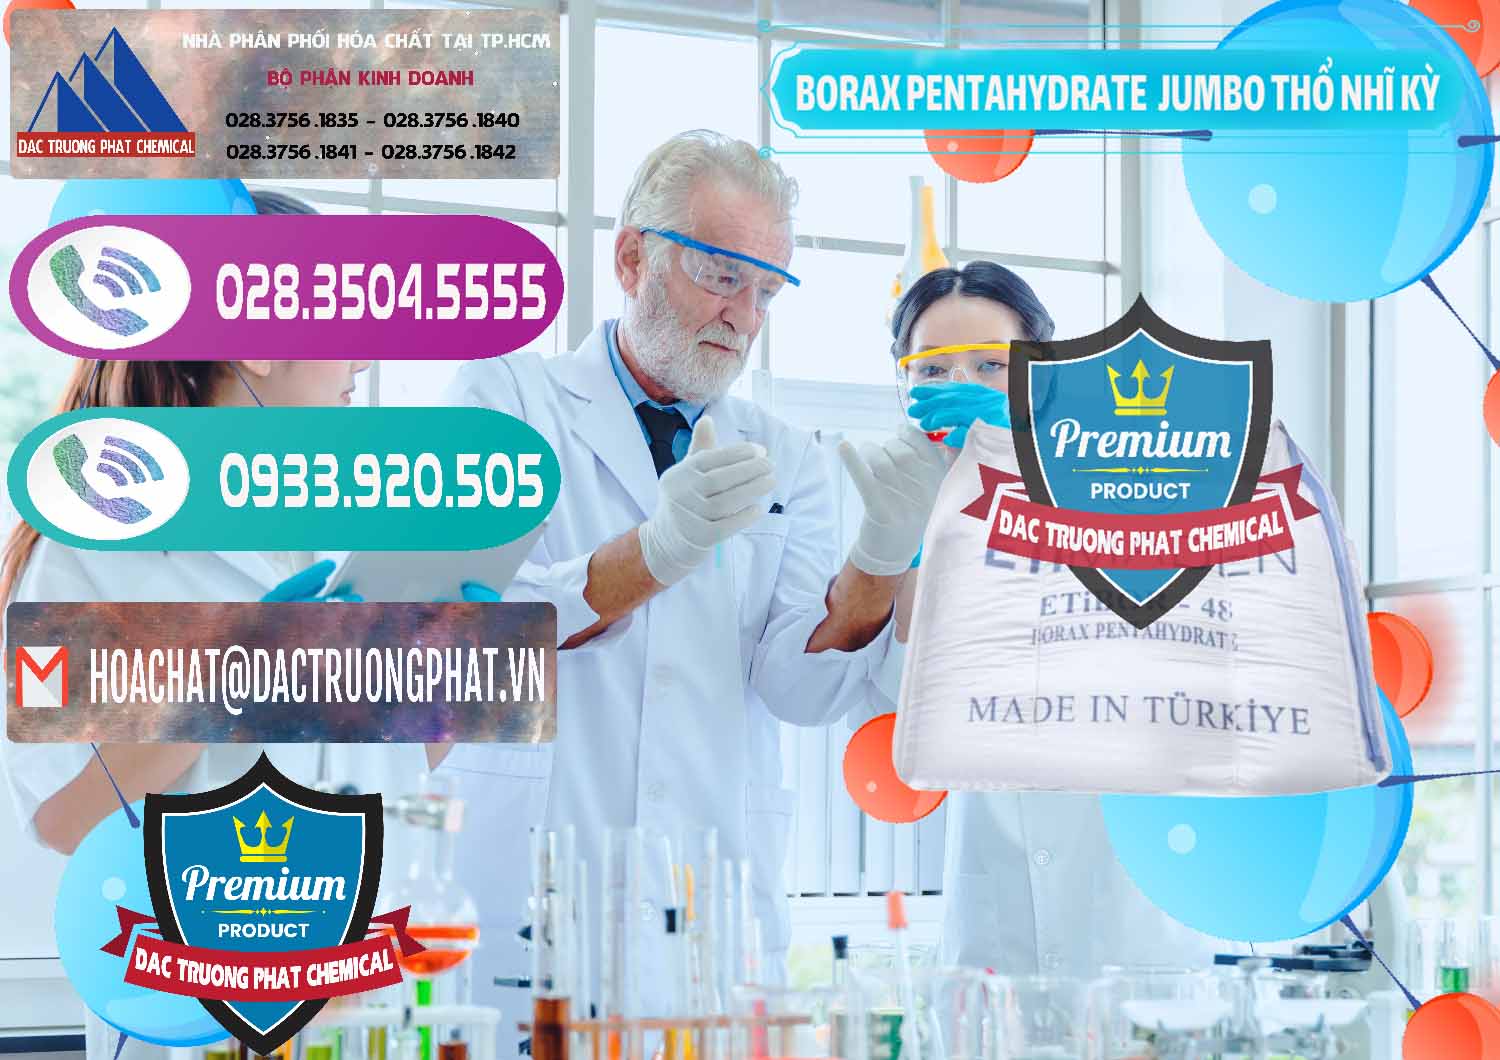 Cty chuyên bán _ phân phối Borax Pentahydrate Bao Jumbo ( Bành ) Thổ Nhĩ Kỳ Turkey - 0424 - Công ty chuyên cung cấp _ kinh doanh hóa chất tại TP.HCM - hoachatxulynuoc.com